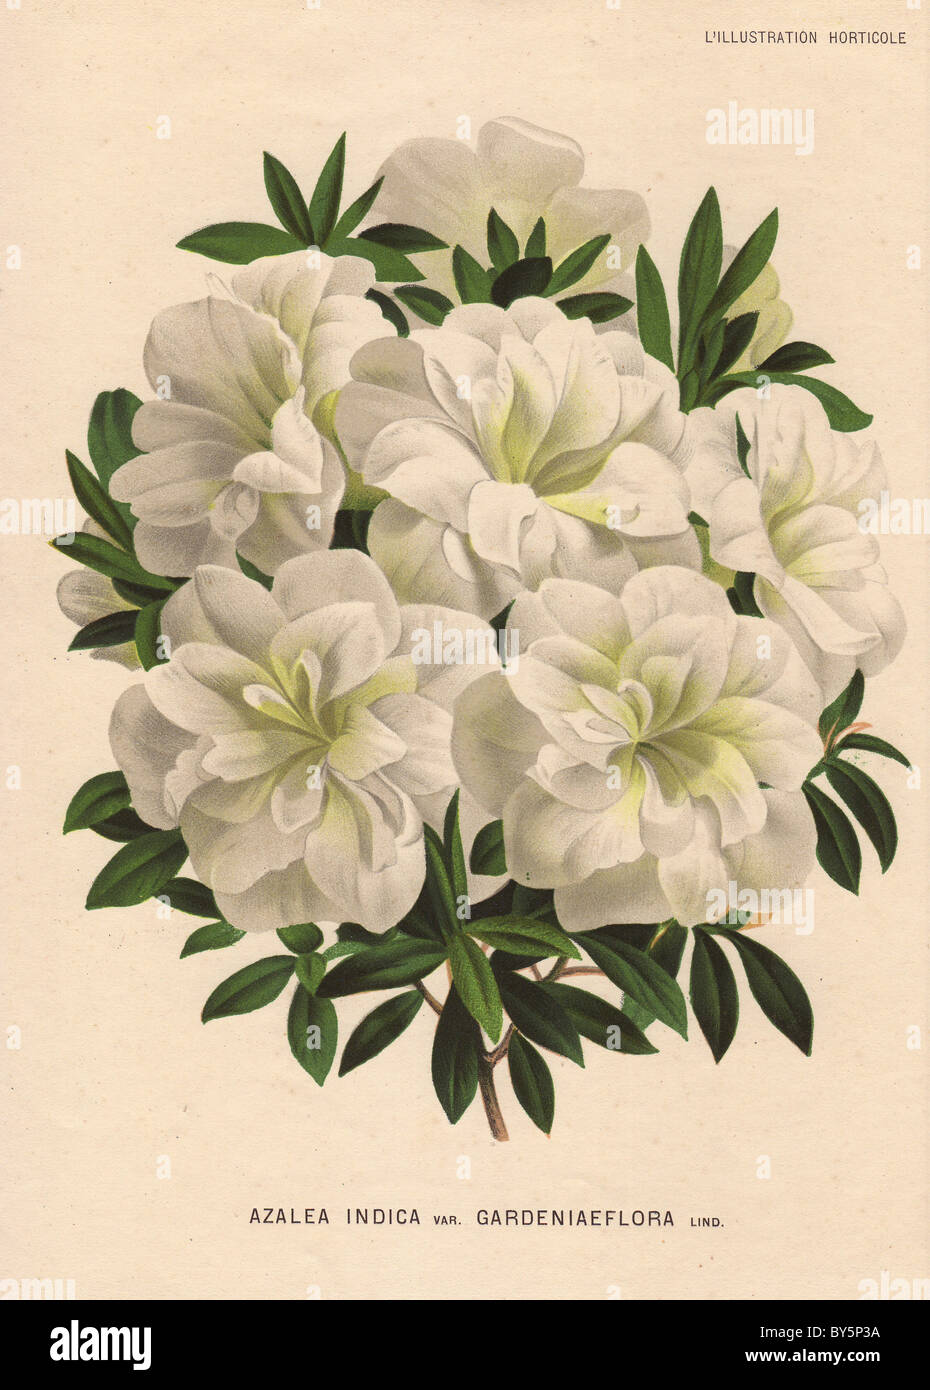 White azalea, Azalea indica var. gardeniaeflora Lind. Stock Photo